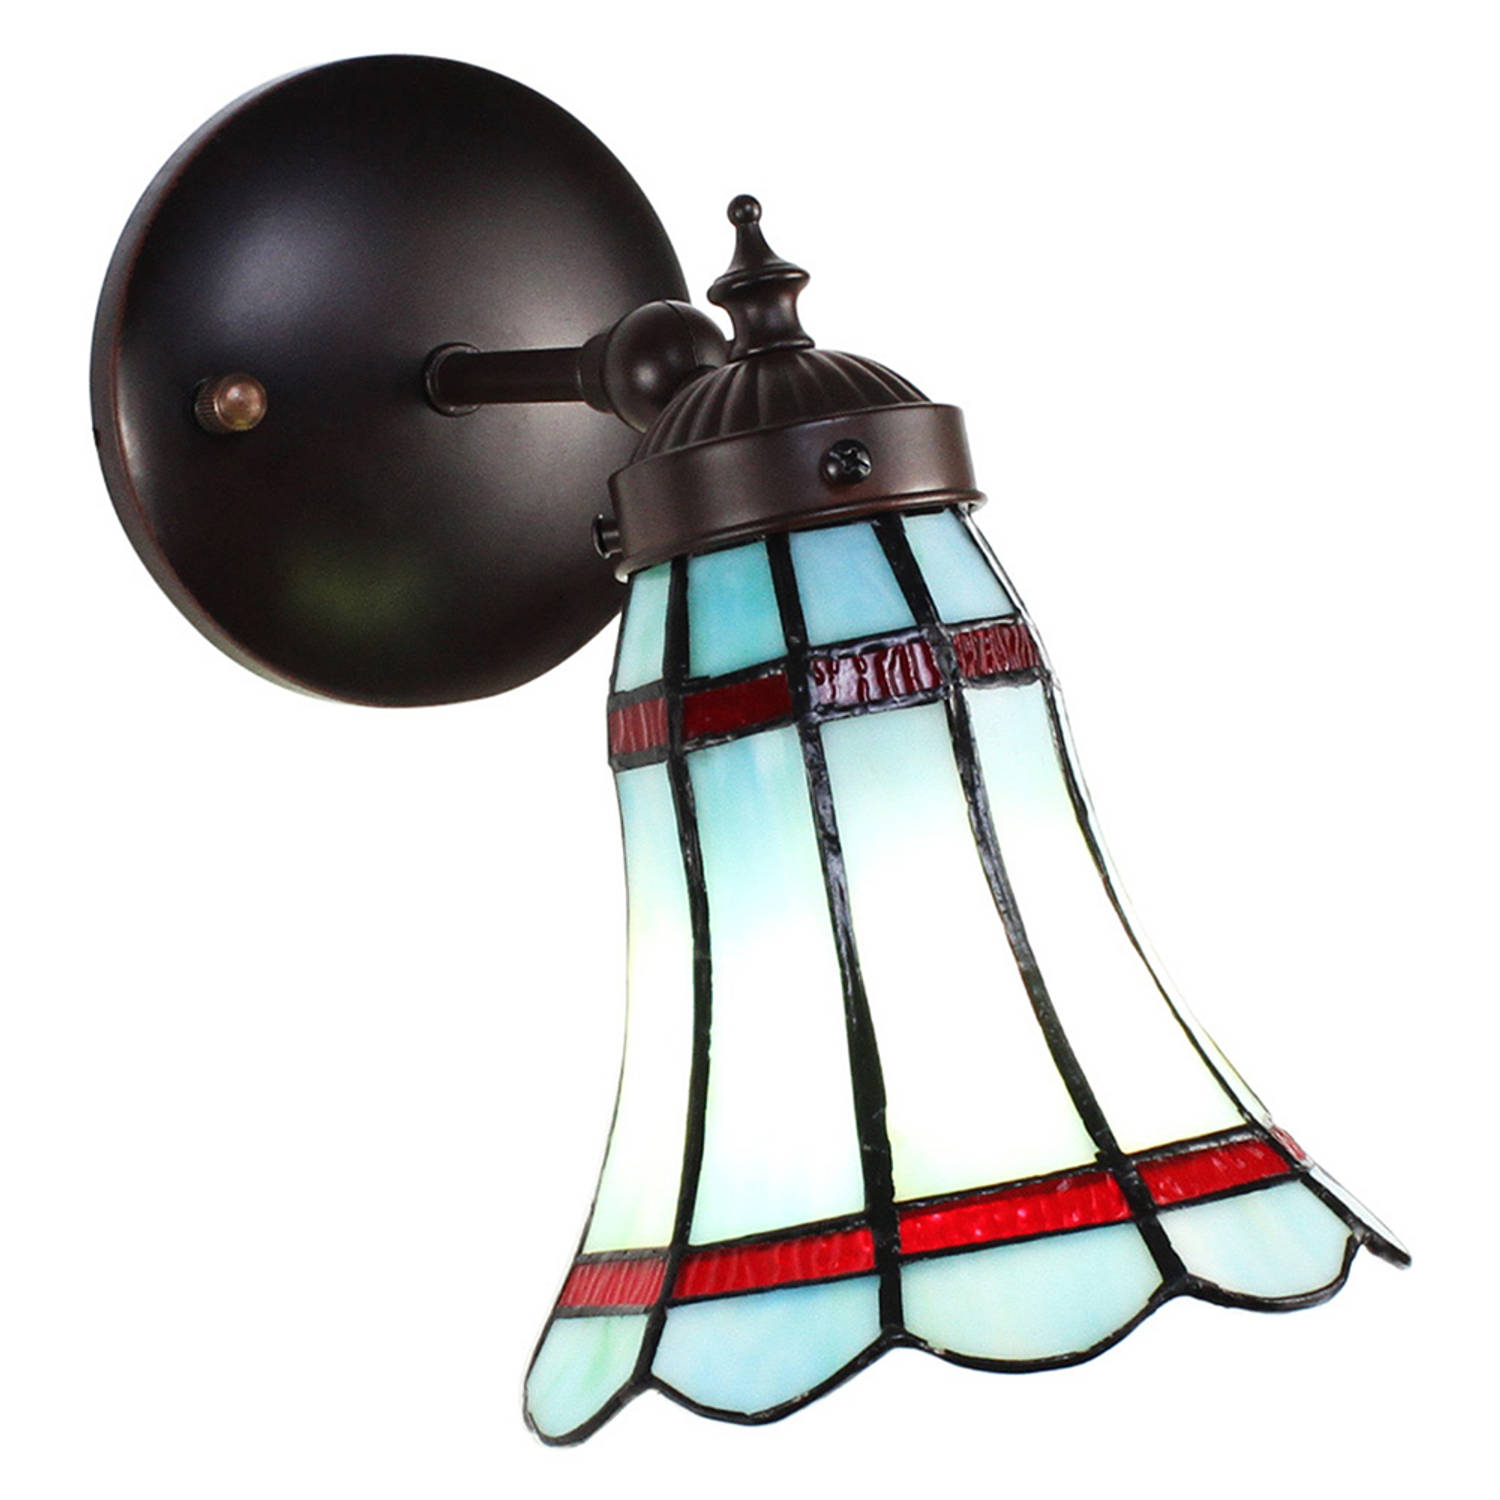 HAES DECO - Wandlamp Tiffany 17x12x23 cm Blauw Rood Glas Metaal Rond Muurlamp Sfeerlamp Tiffany Lamp